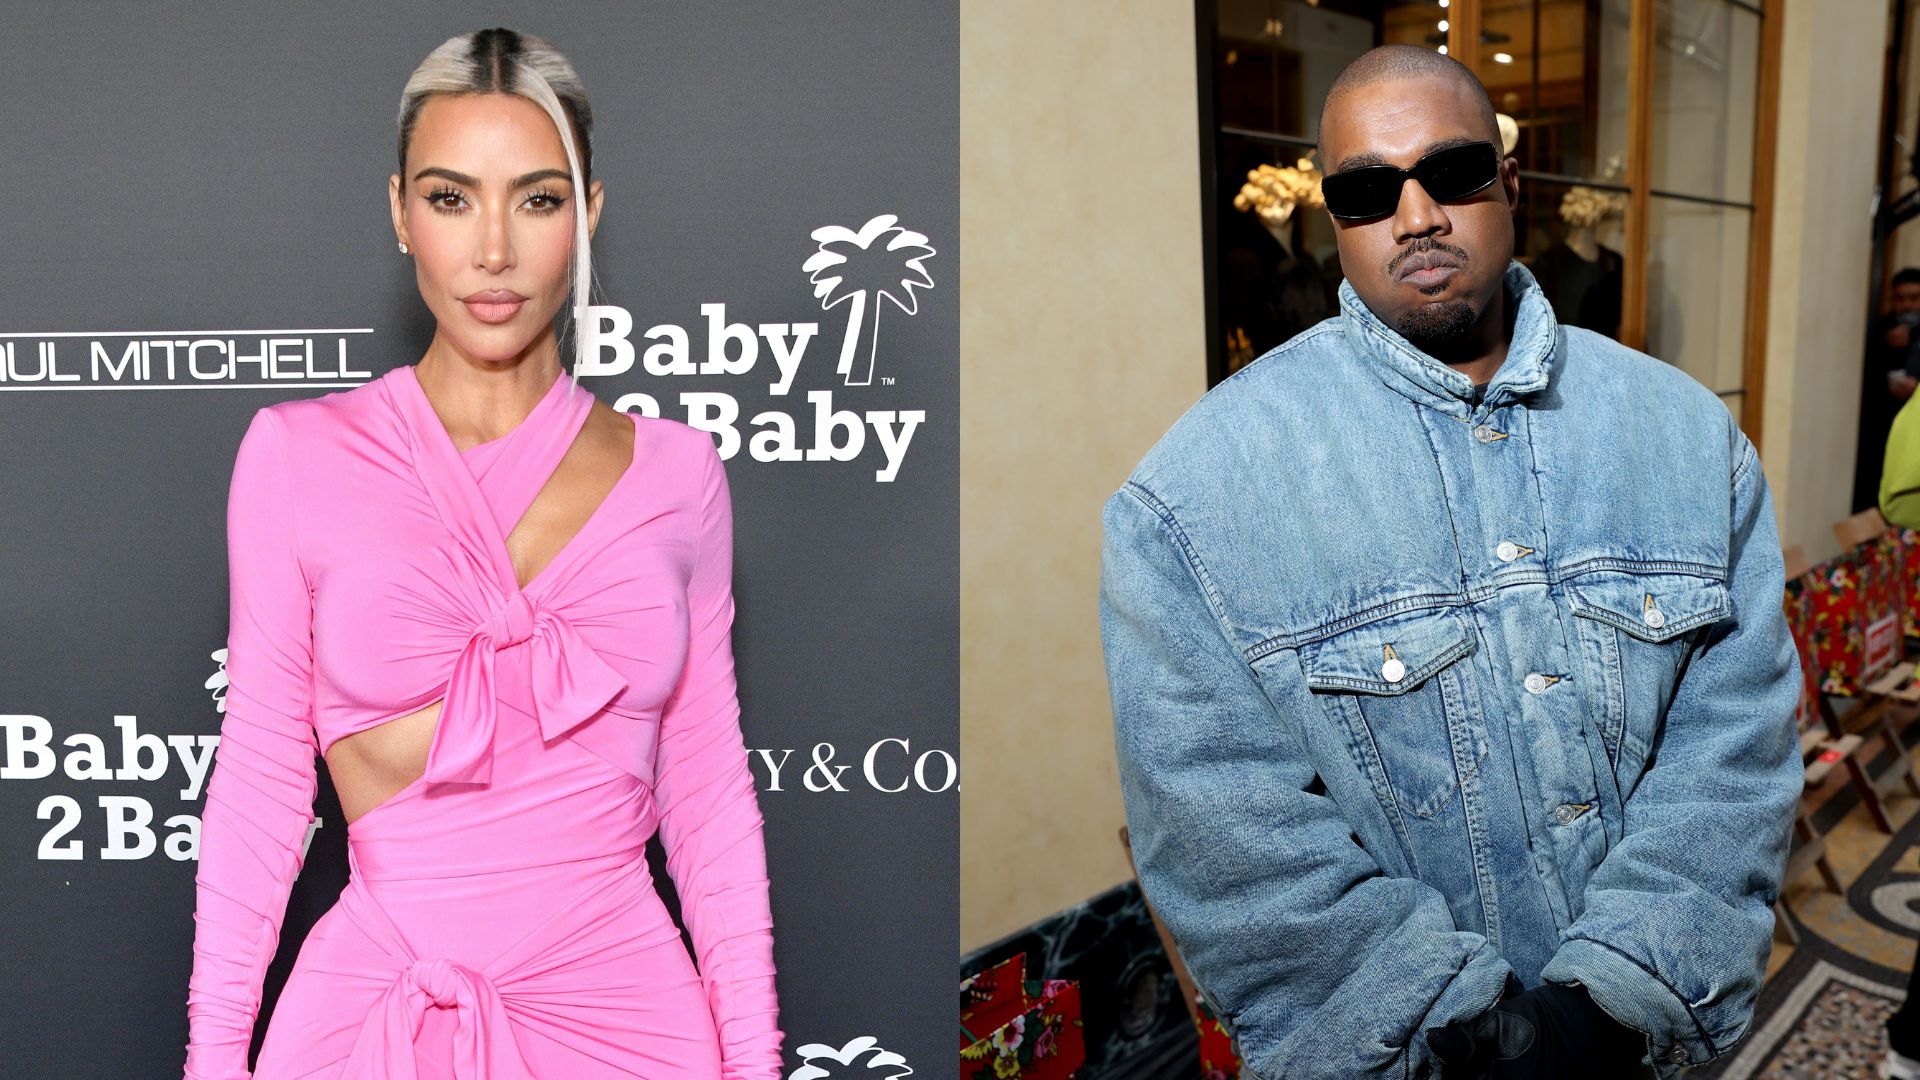 Kim Kardashian traiu Kanye West?! Testemunhas rebatem acusação feita pelo rapper